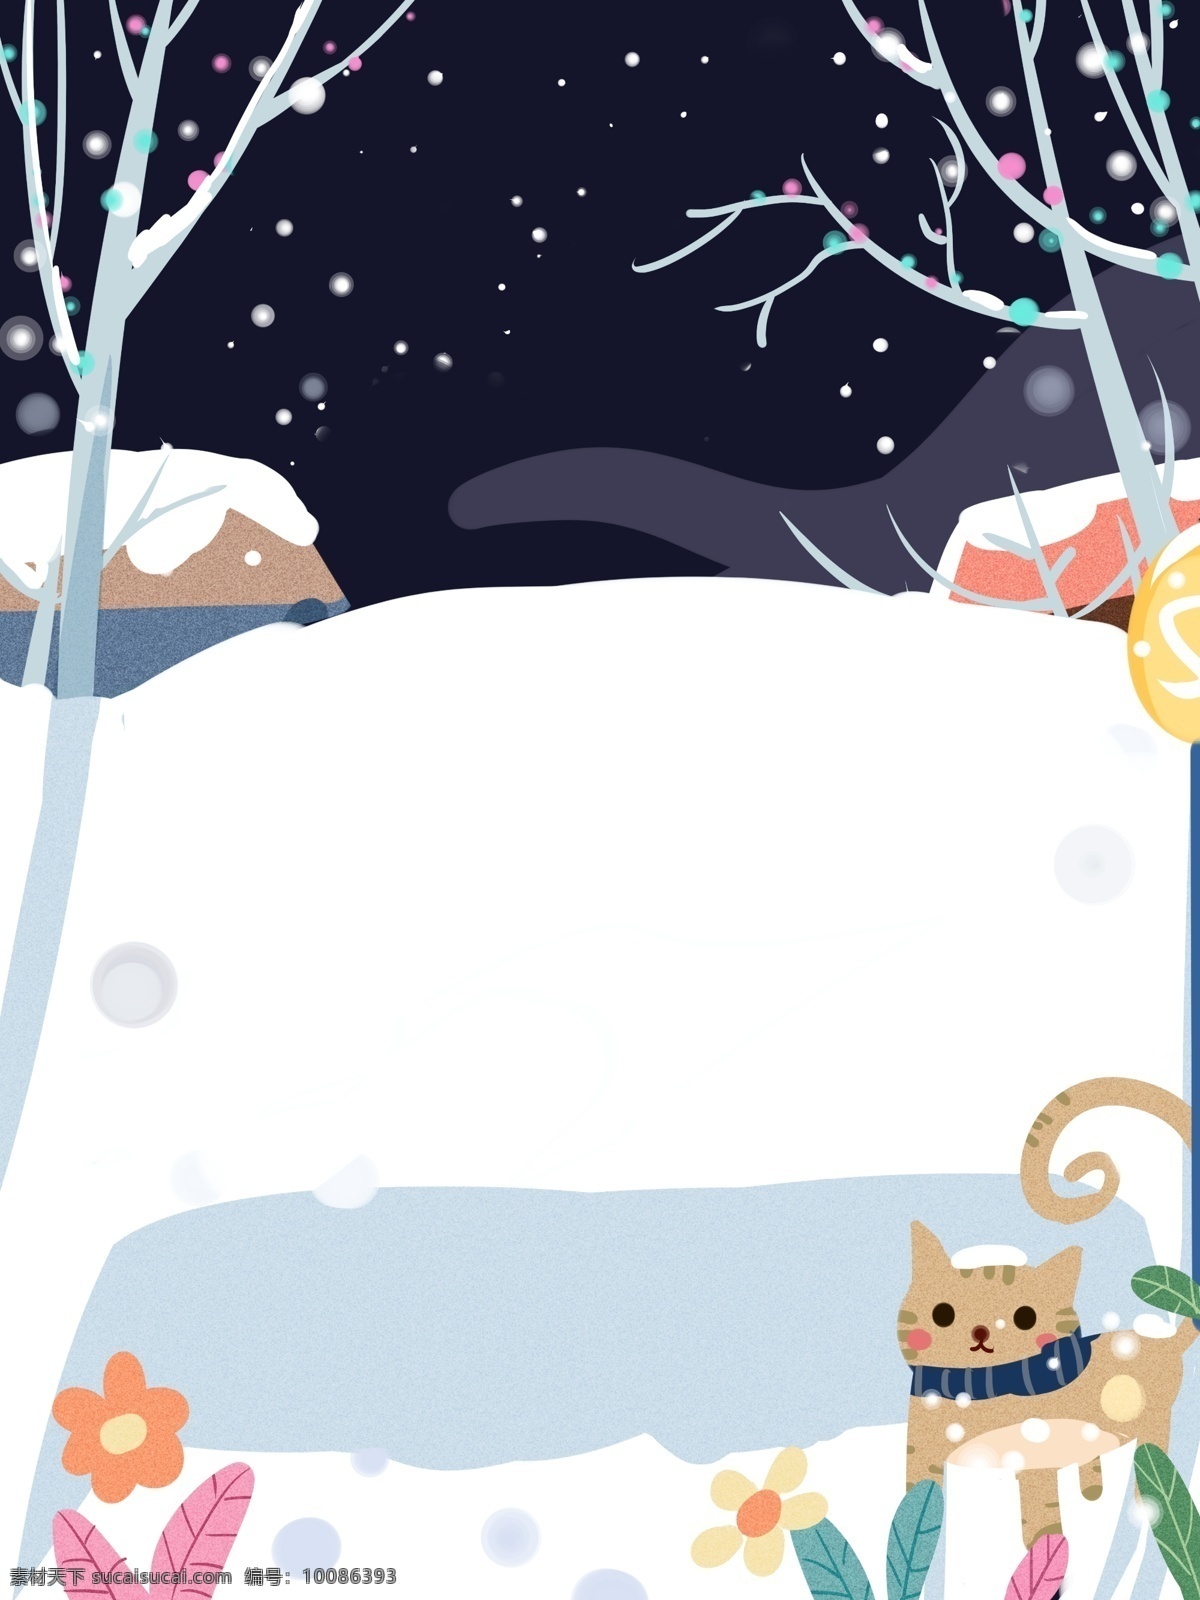 手绘 冬季 雪地 猫咪 背景 冬天 背景图 创意 下雪 广告背景 彩绘背景 通用背景 特邀背景 促销背景 背景展板图